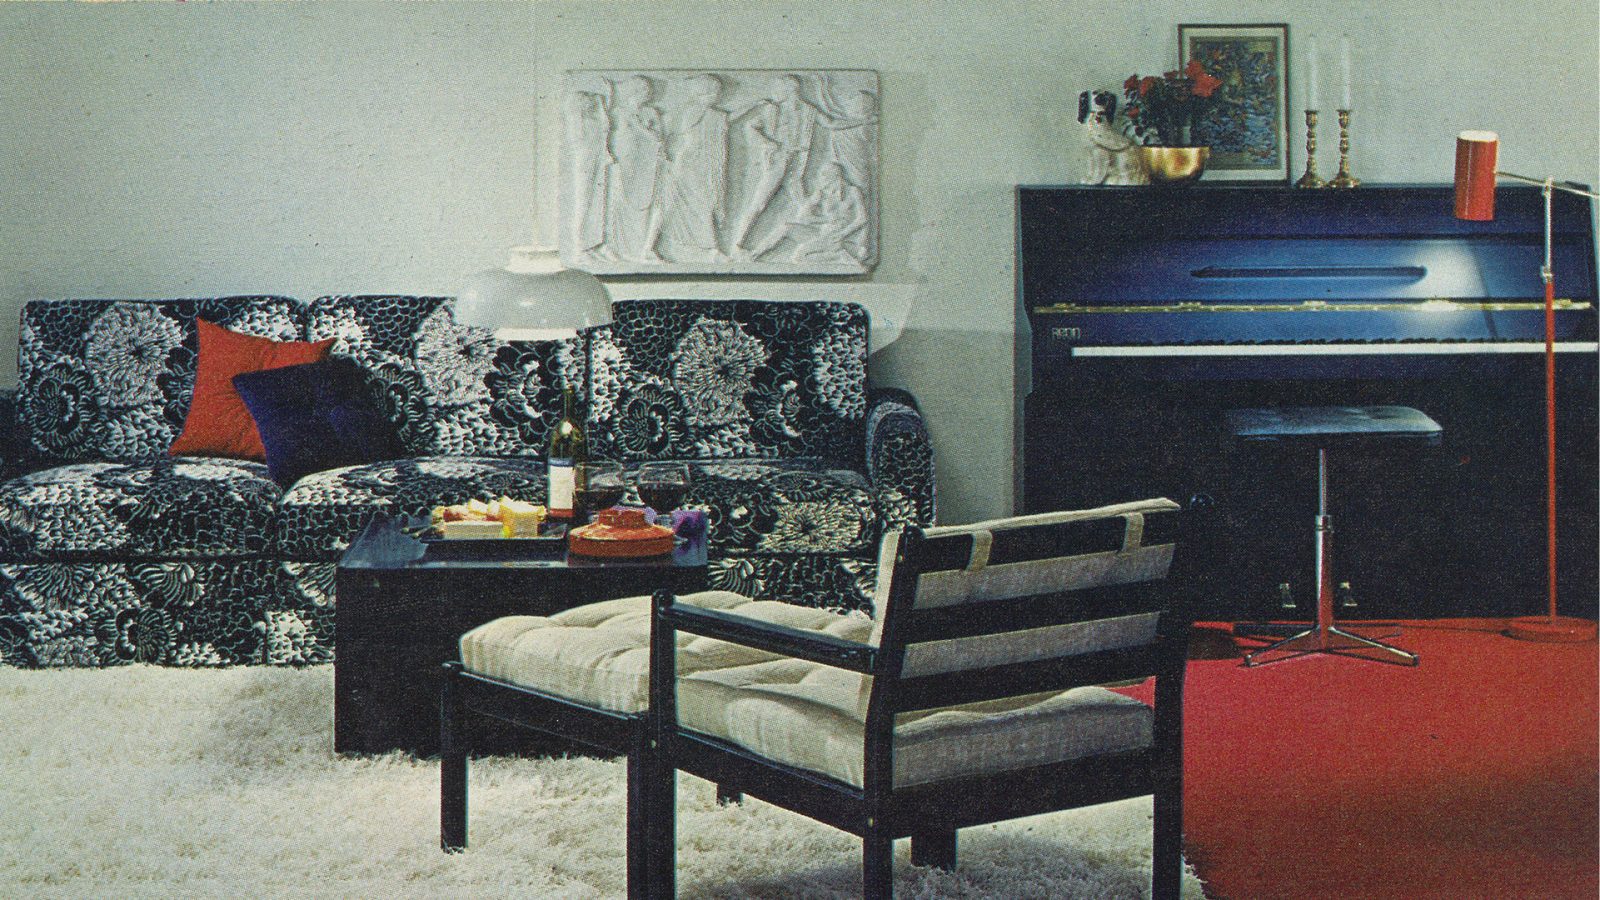 1970-talsinteriör med svartvita möbler, vit ryamatta och mörkblått piano.